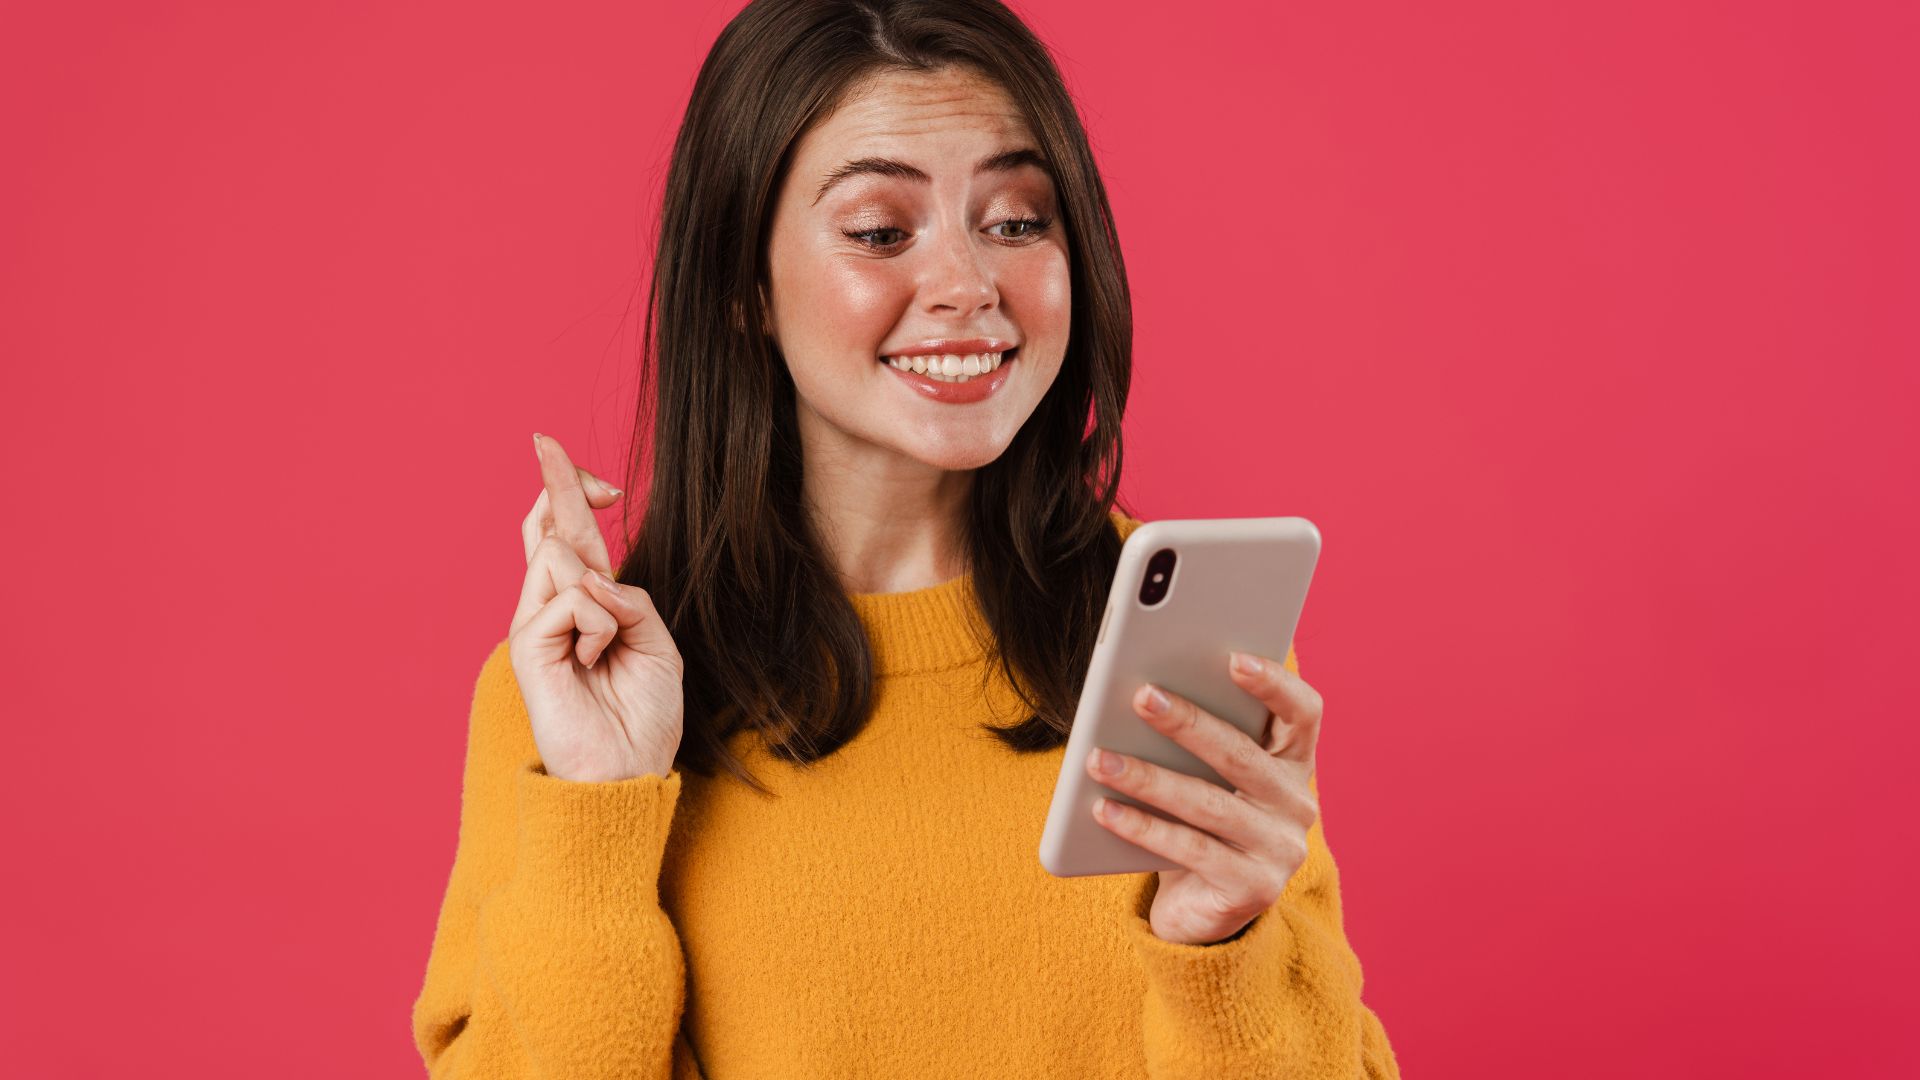 Imagem de fundo vermelho. Nela aparece uma mulher de cabelos médios e blusa amarela de frio segurando com uma das mãos um celular.